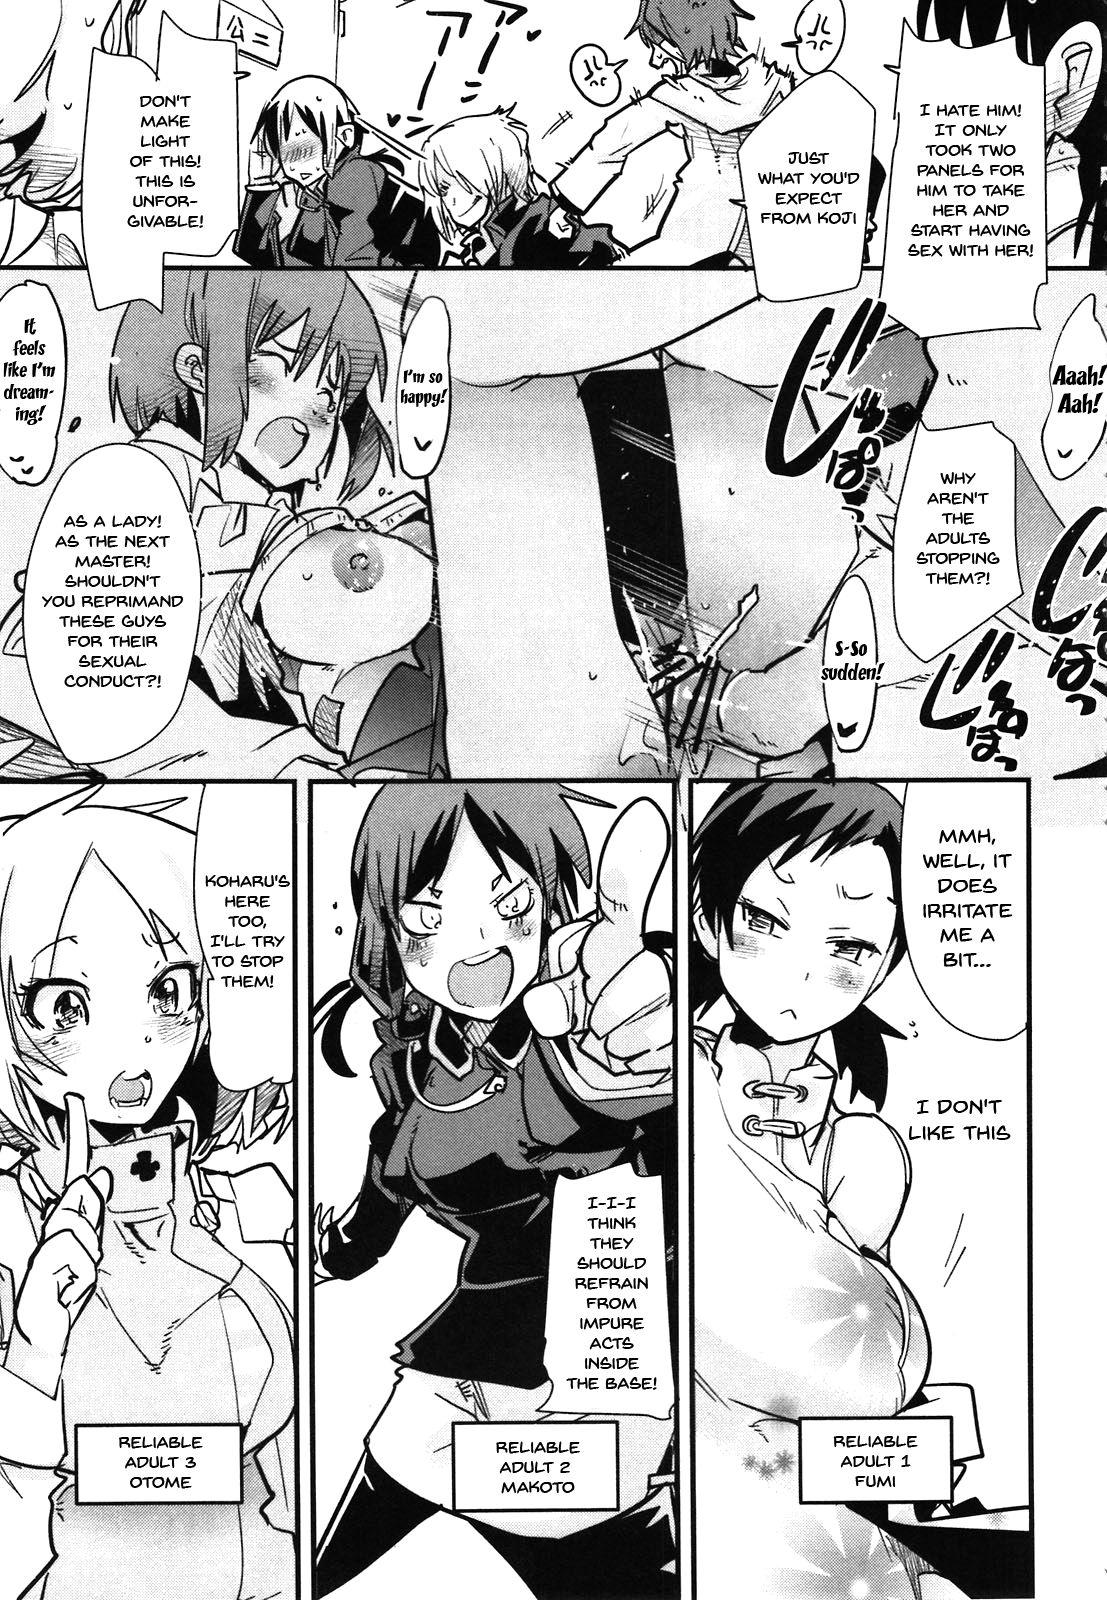 Lesbians Atlus Super Stars 2 - Persona 4 Devil survivor 2 Secret - Page 5